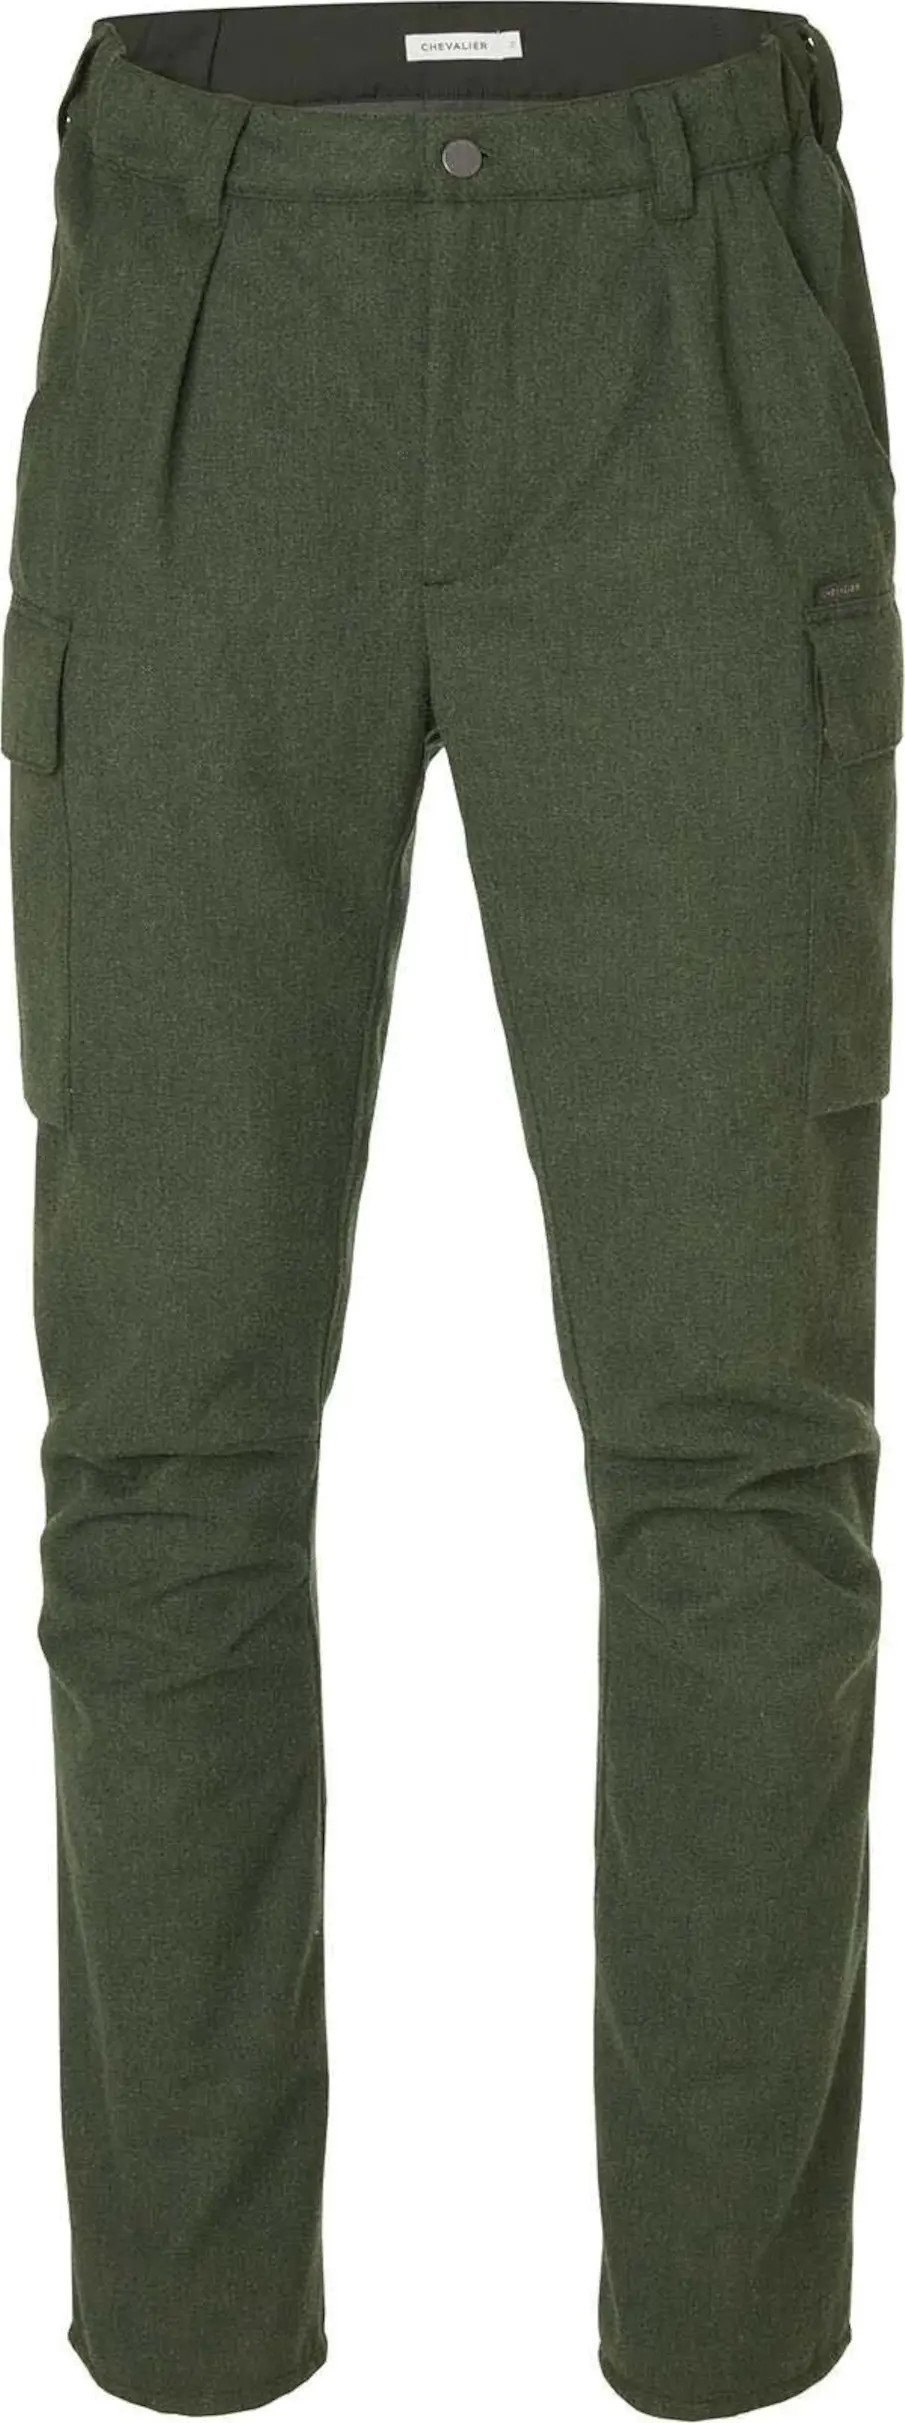 Men's Stalk Hybrid Wool Pants Dark Greeen